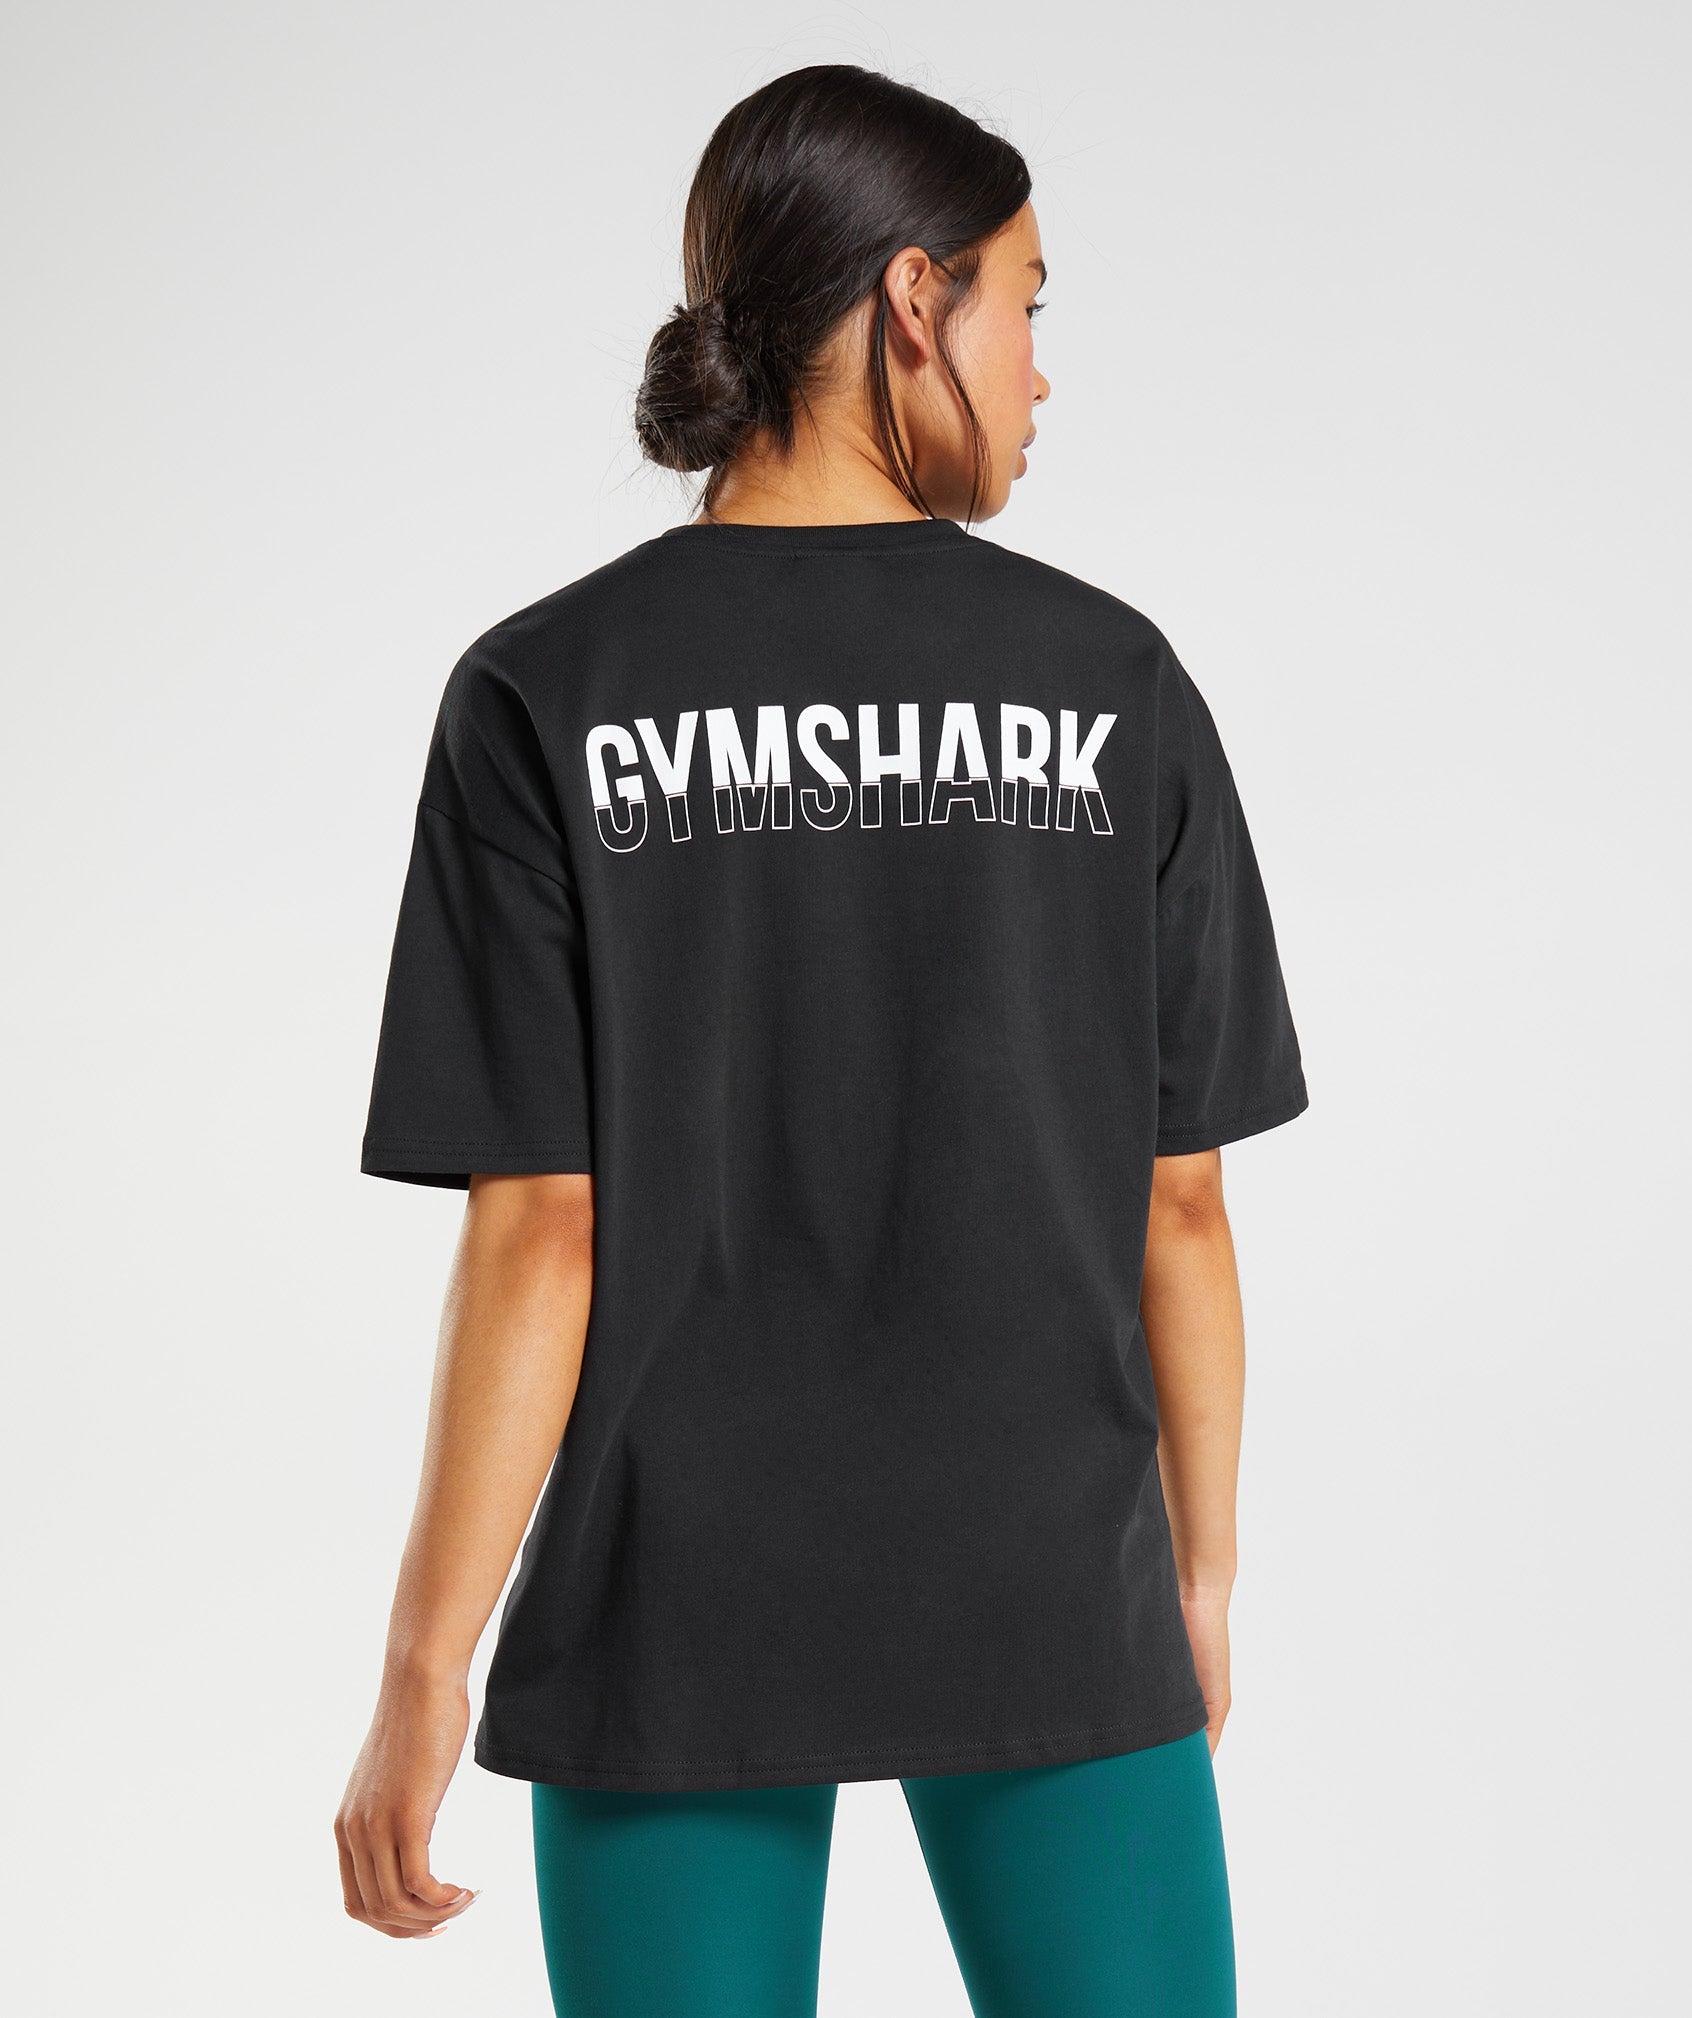 leerplan vervolgens Beginner Gymshark Fraction Oversized T-Shirt - Black/White | Gymshark